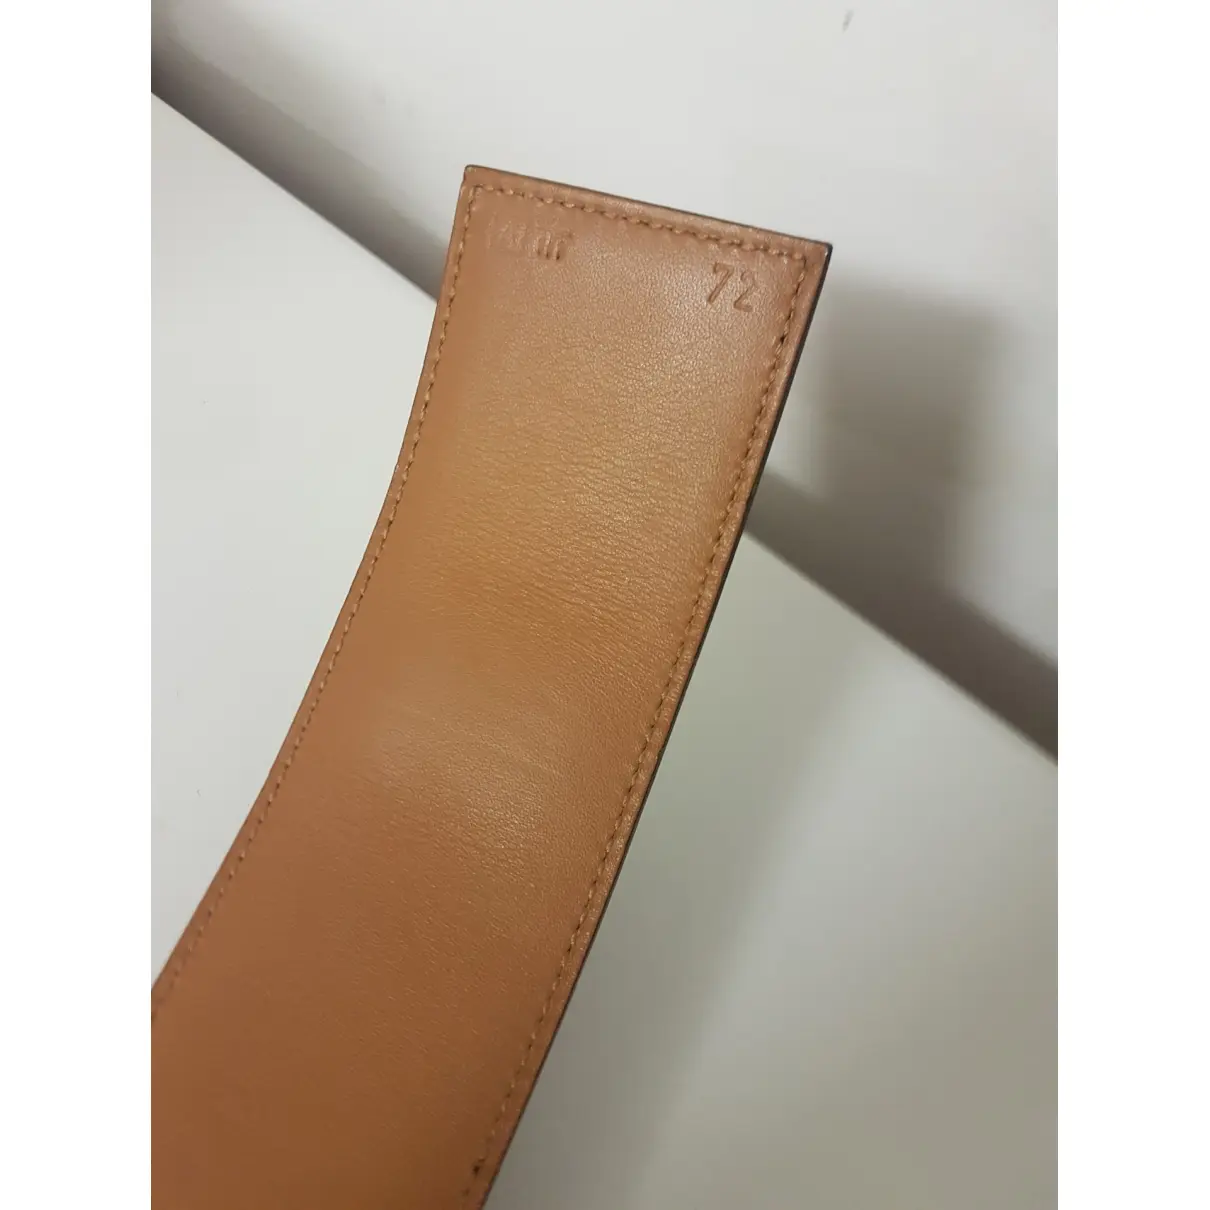 Hermès Collier de chien leather belt for sale - Vintage